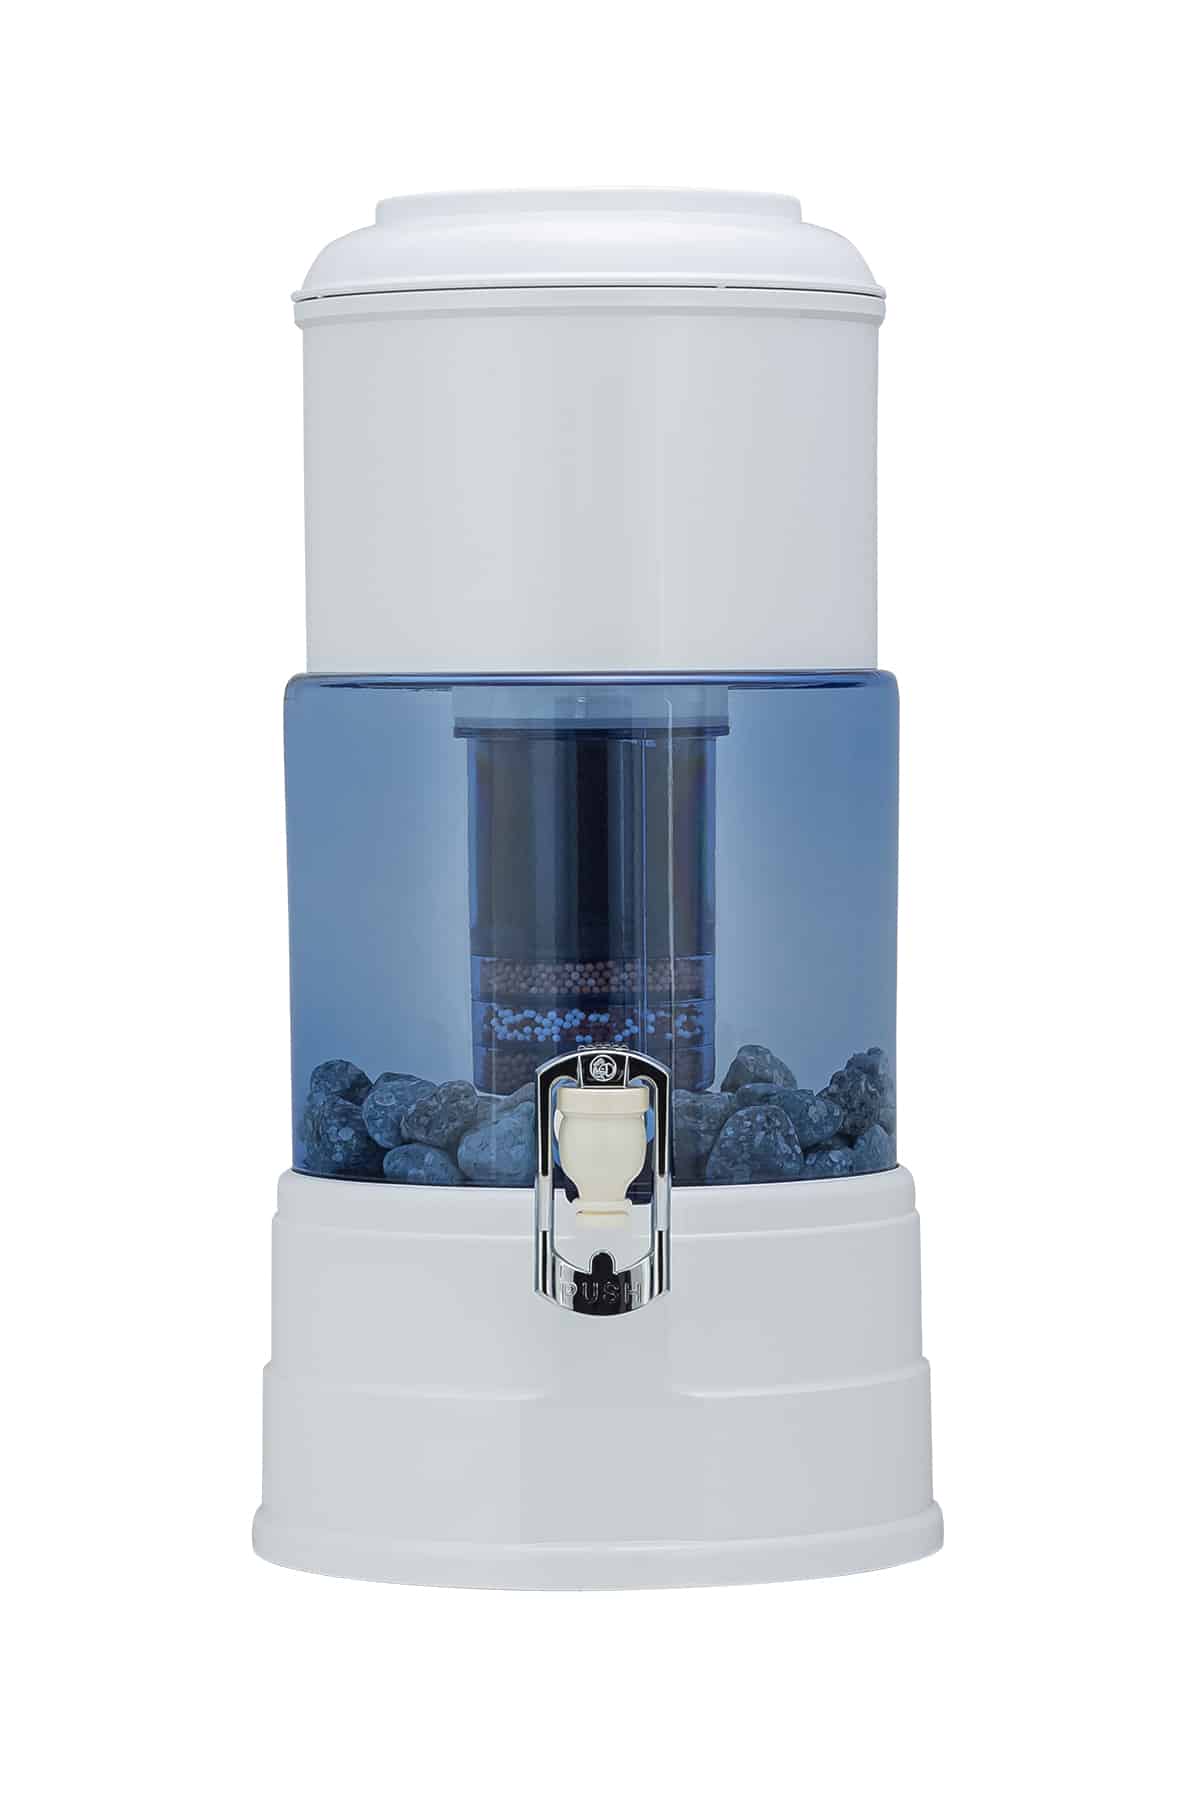 Achetez corée machine à eau alcaline pour de l'eau potable propre